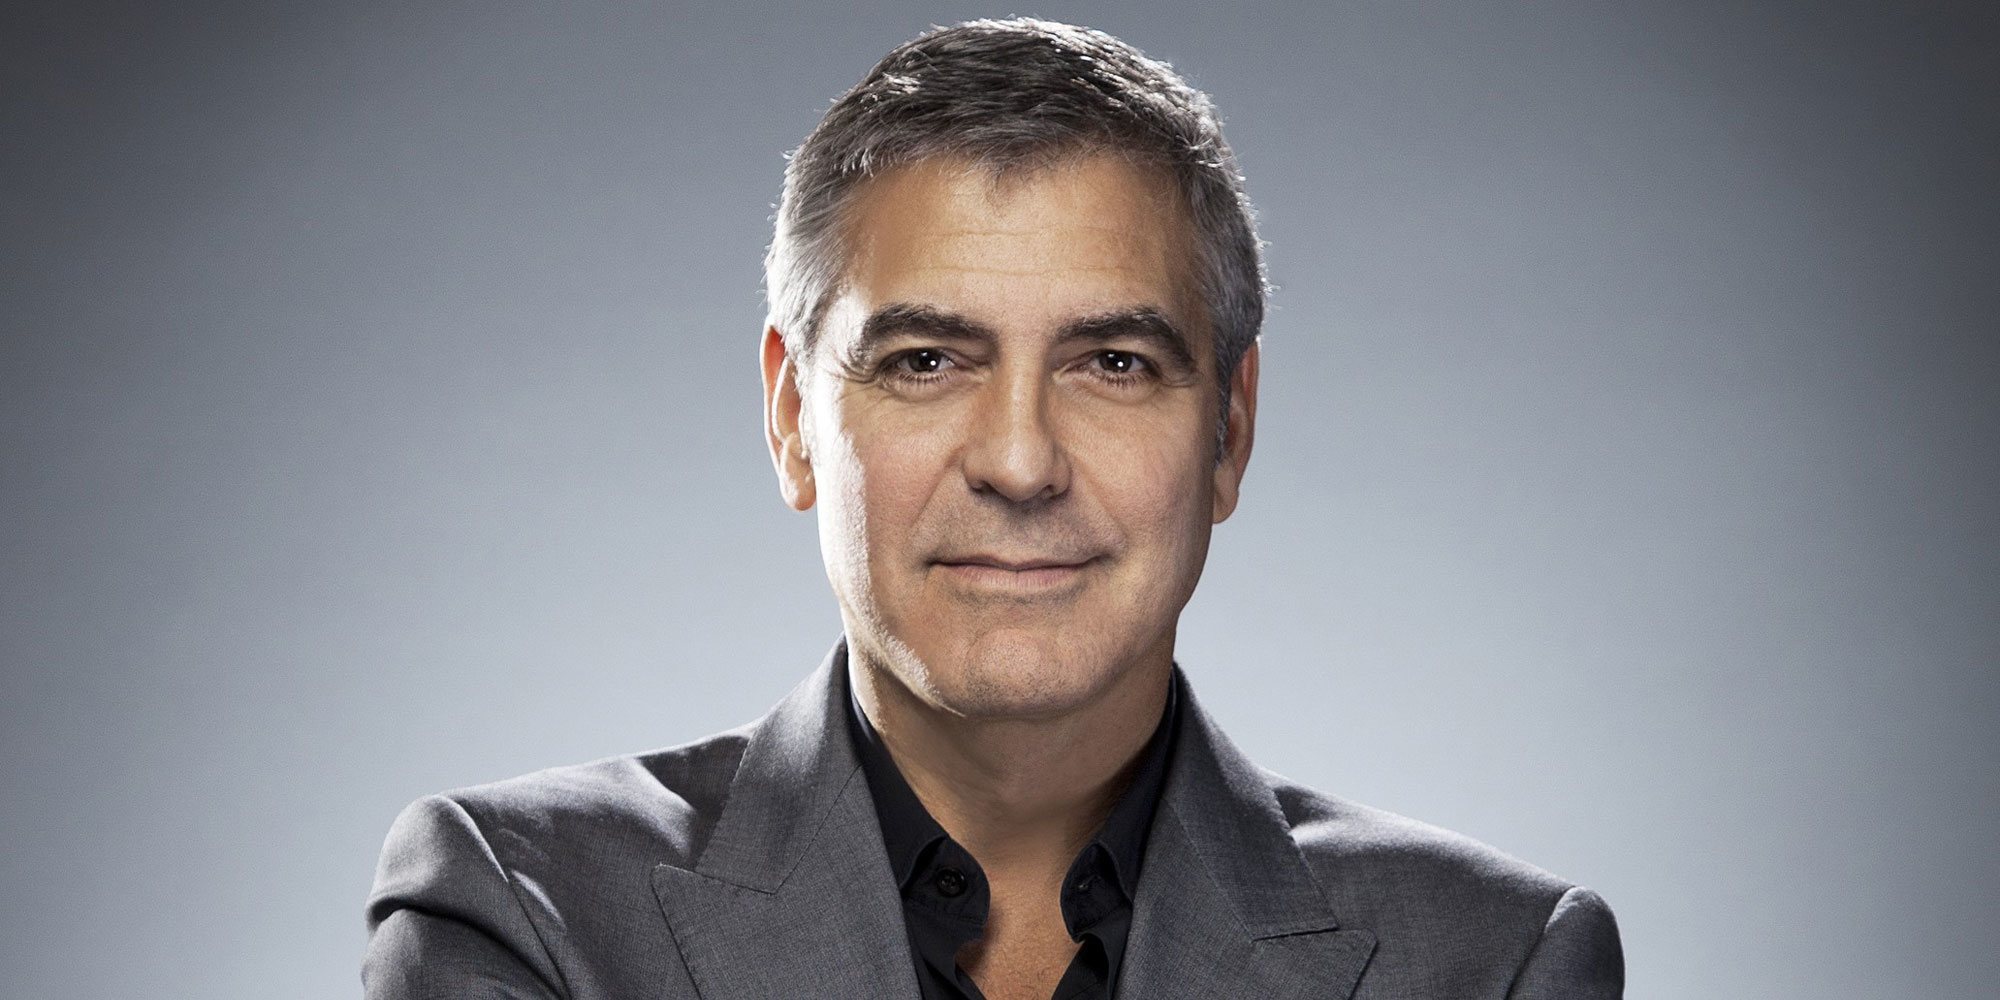 El mensaje de George Clooney que recuerda las vergüenzas de Estados Unidos y que ataca a Donald Trump